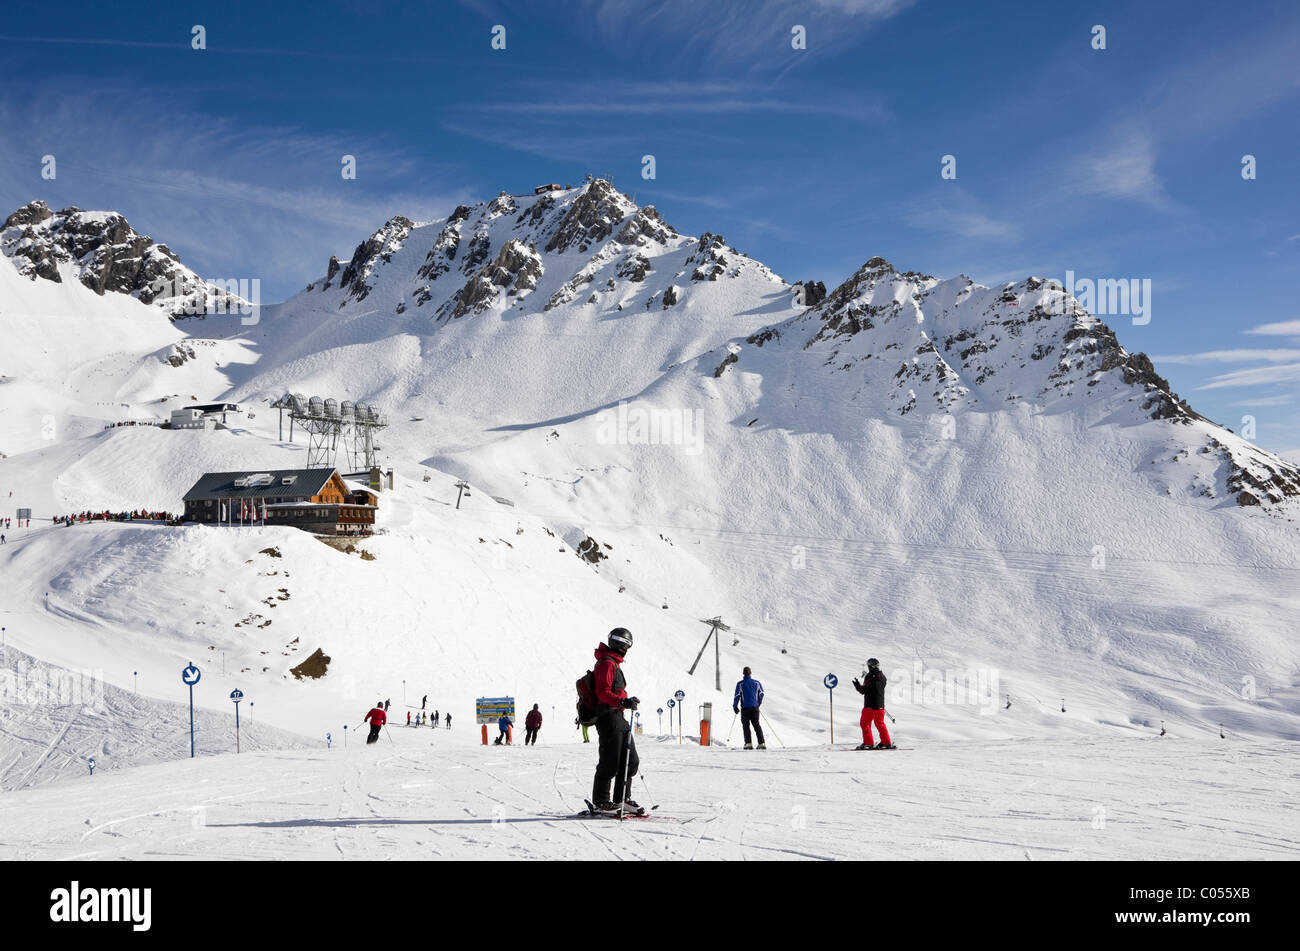 Skifahrer auf Skipisten mit Ulmer Californias Bergrestaurant und Schindler Spitze Berg über Skifahren. St. Anton am Arlberg-Tirol-Österreich Stockfoto